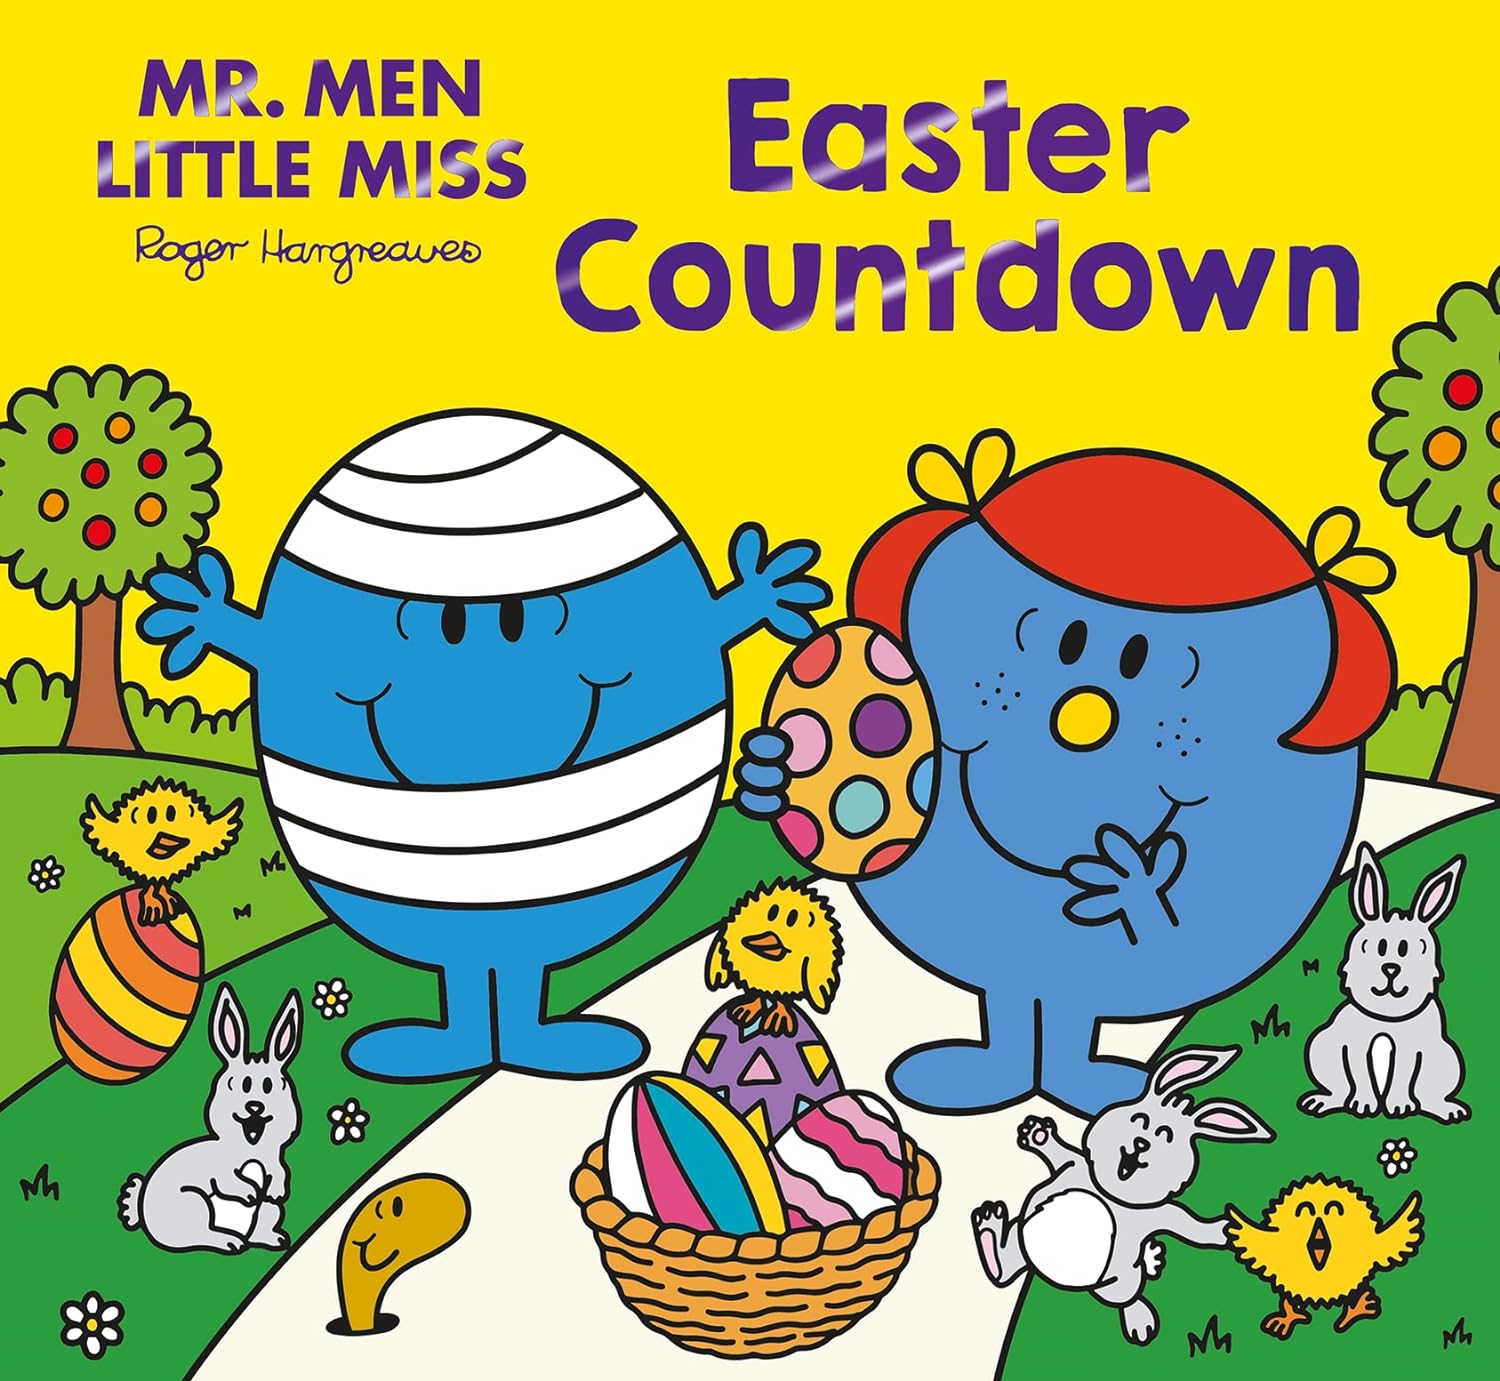 Mr. Men Little Miss Easter Countdown